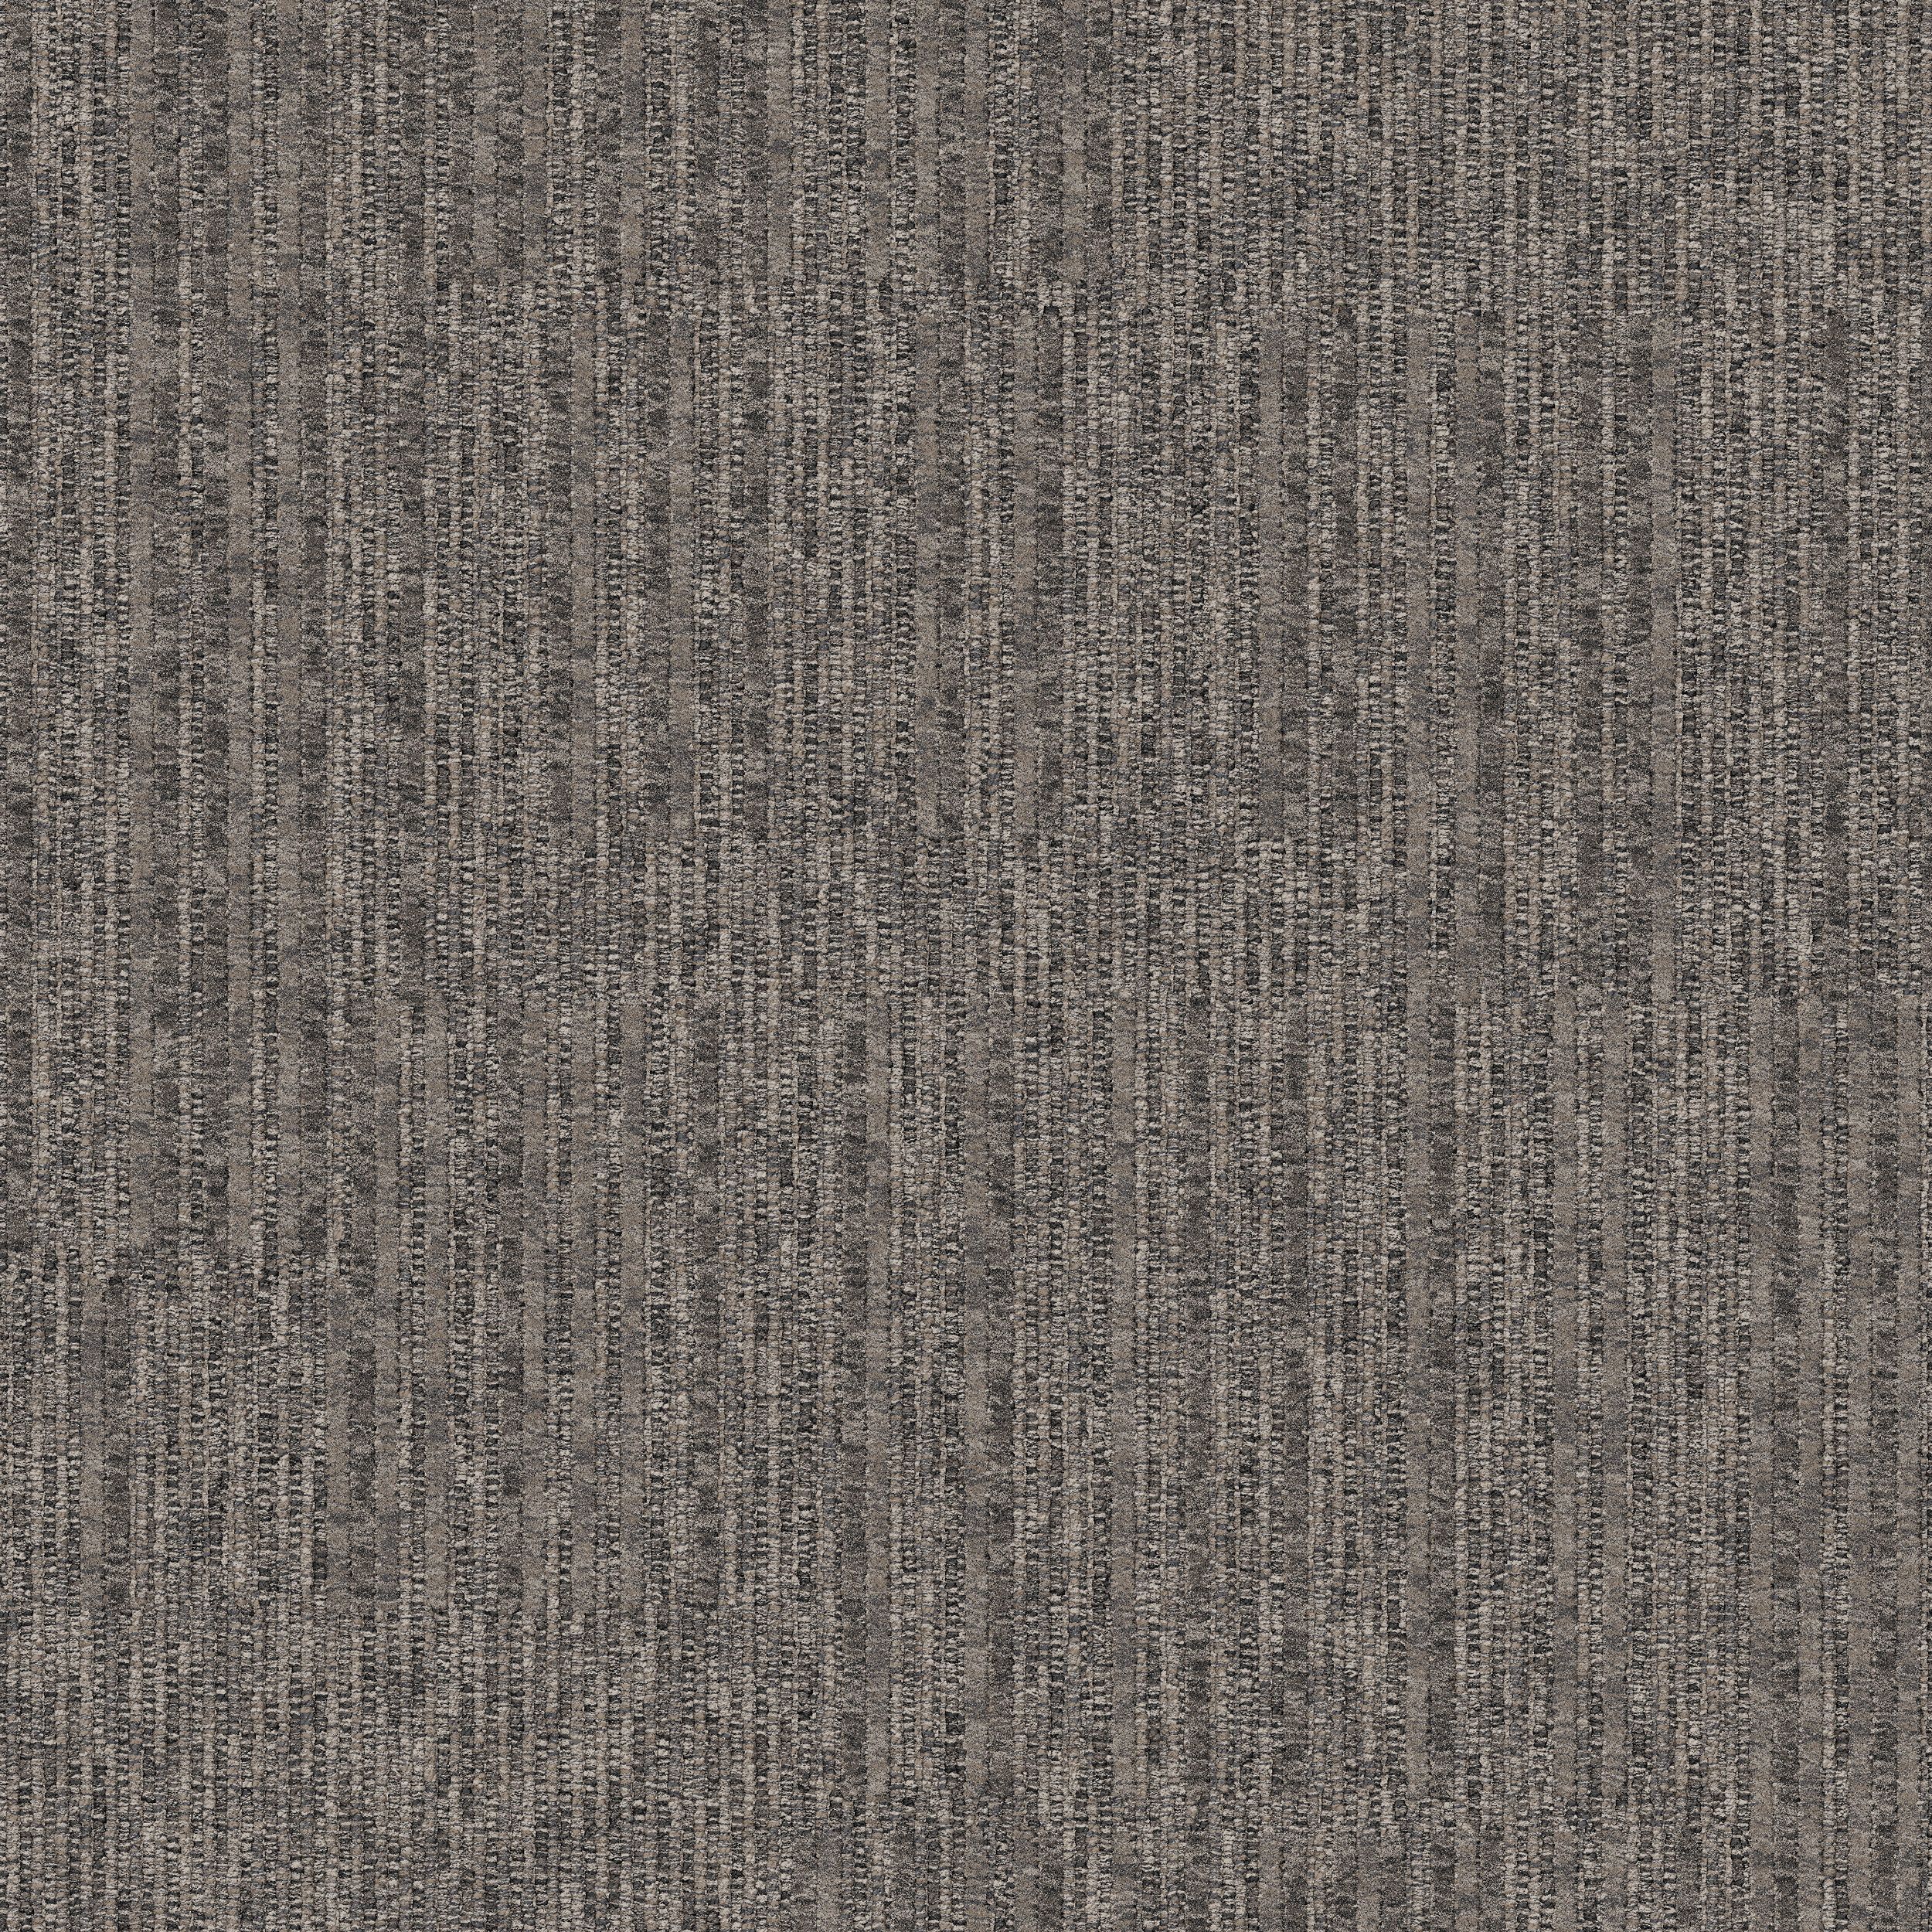 Equilibrium Carpet Tile In Persistence número de imagen 5